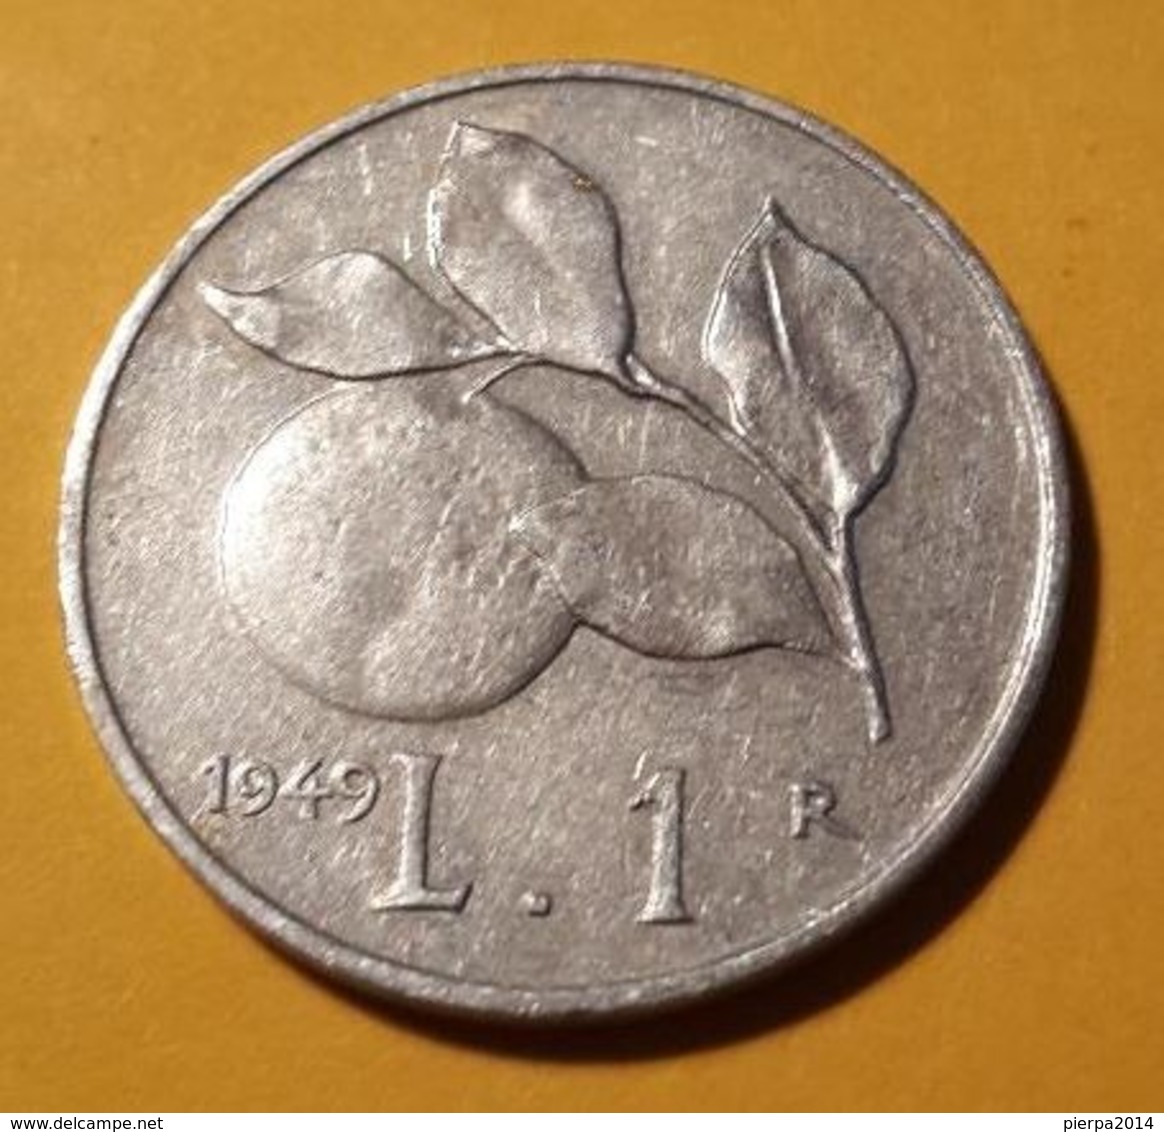 1 LIRE DEL 1949 DELLA REPUBBLICA ITALIANA - 1 Lira